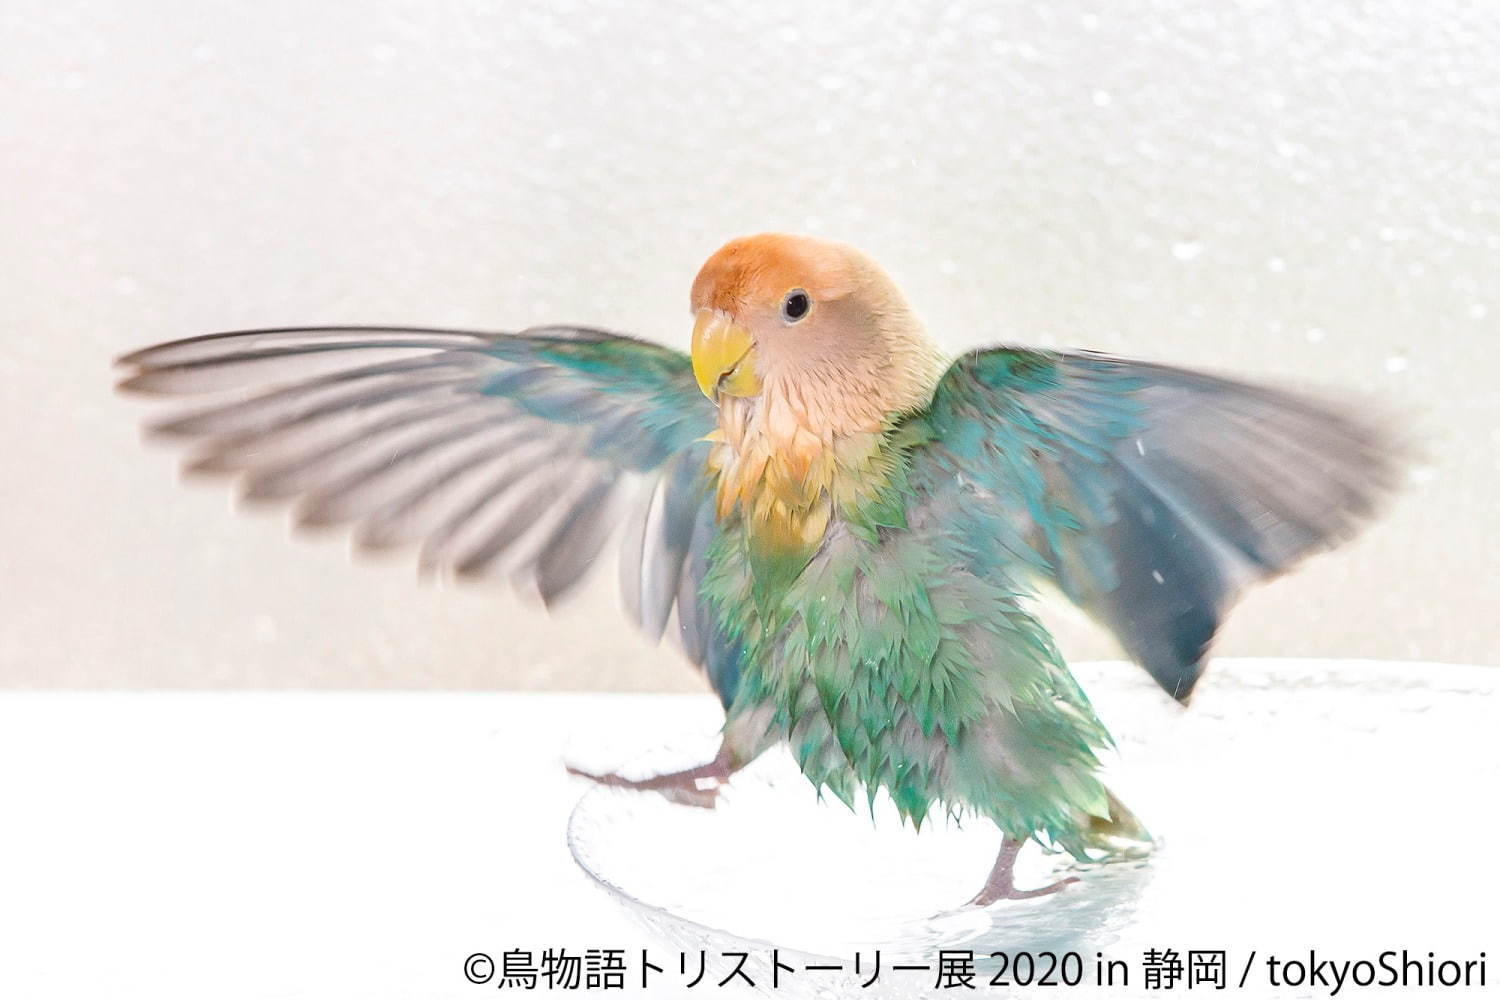 鳥物語トリストーリー展」静岡で、“世界一小さいあひる”など鳥の写真 ...